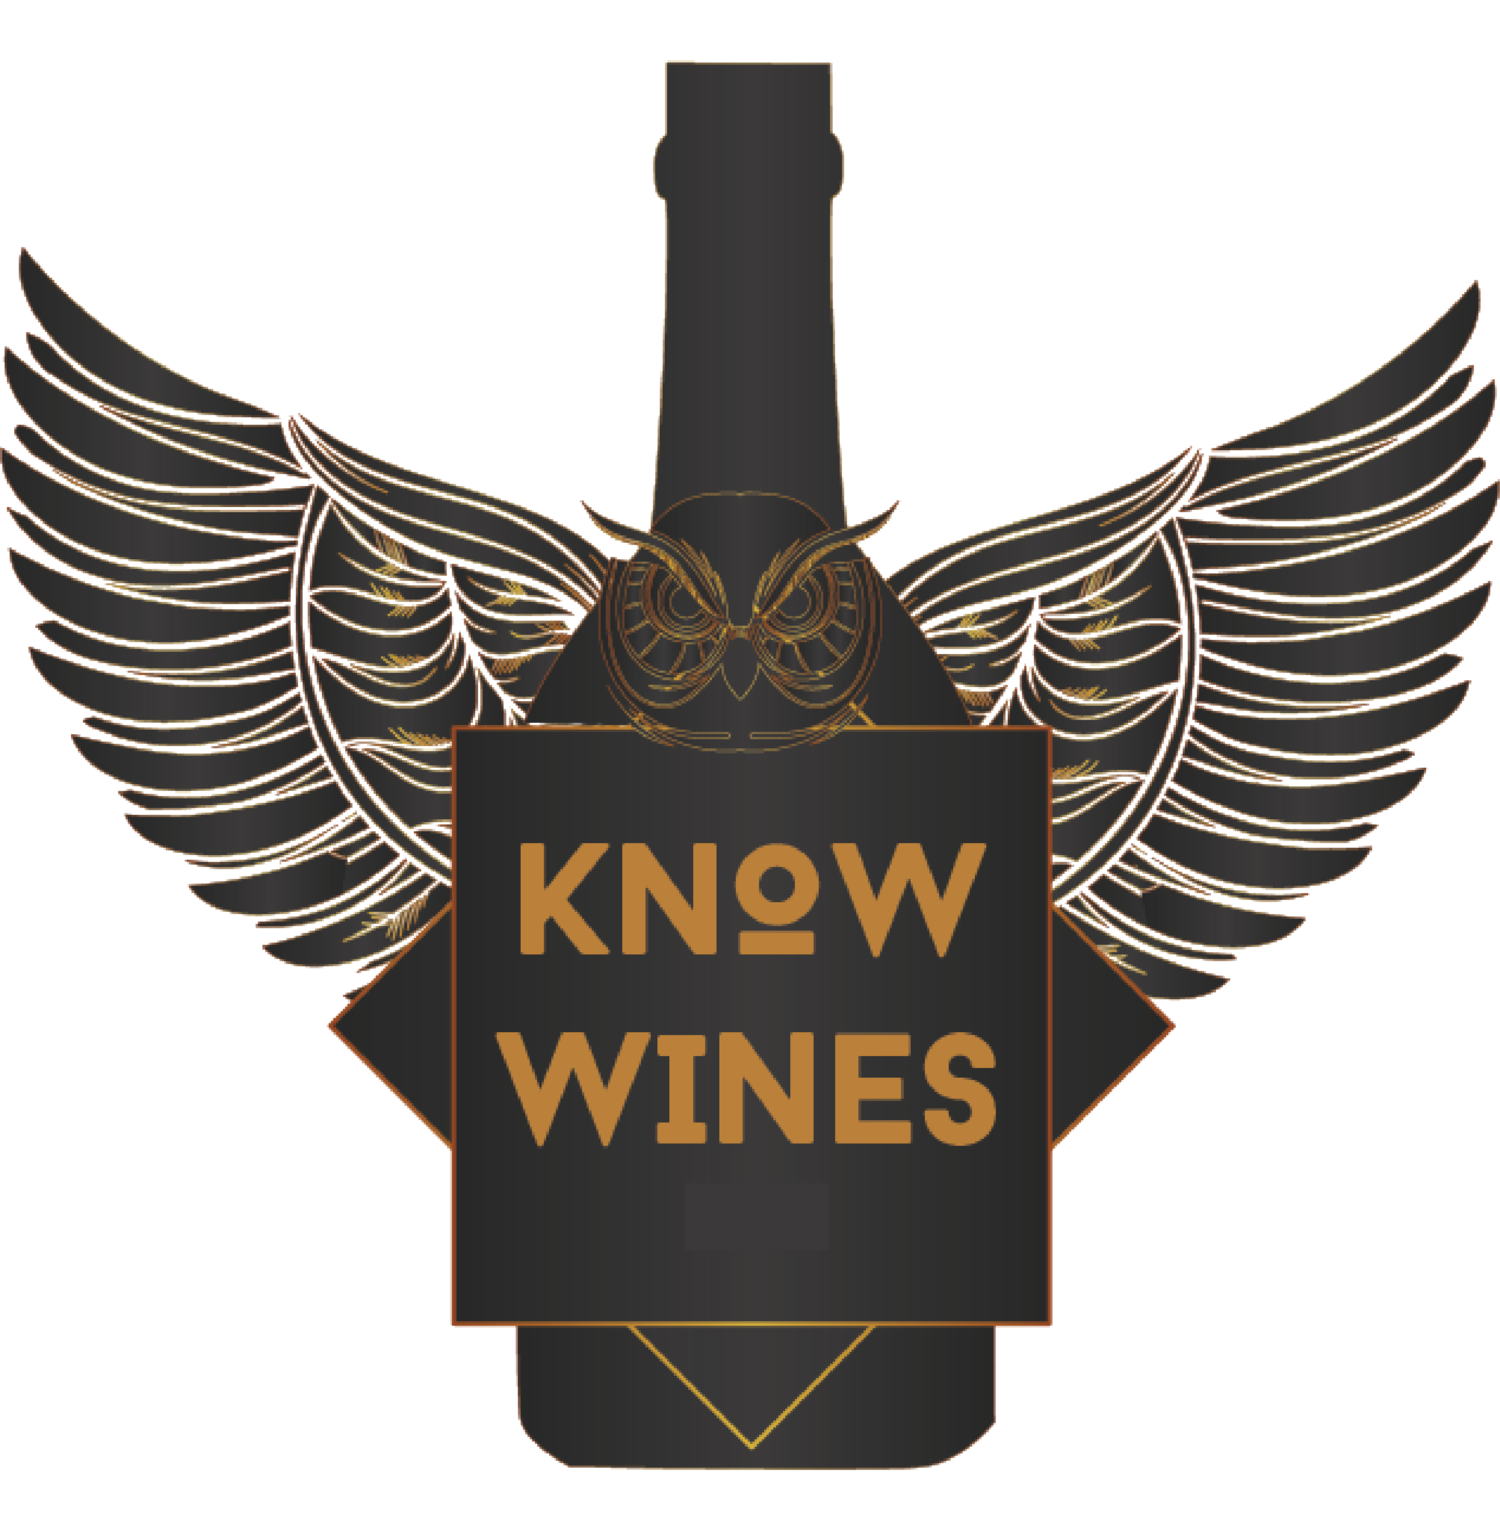 Wine Travel The Knowwines Blog Knowwines